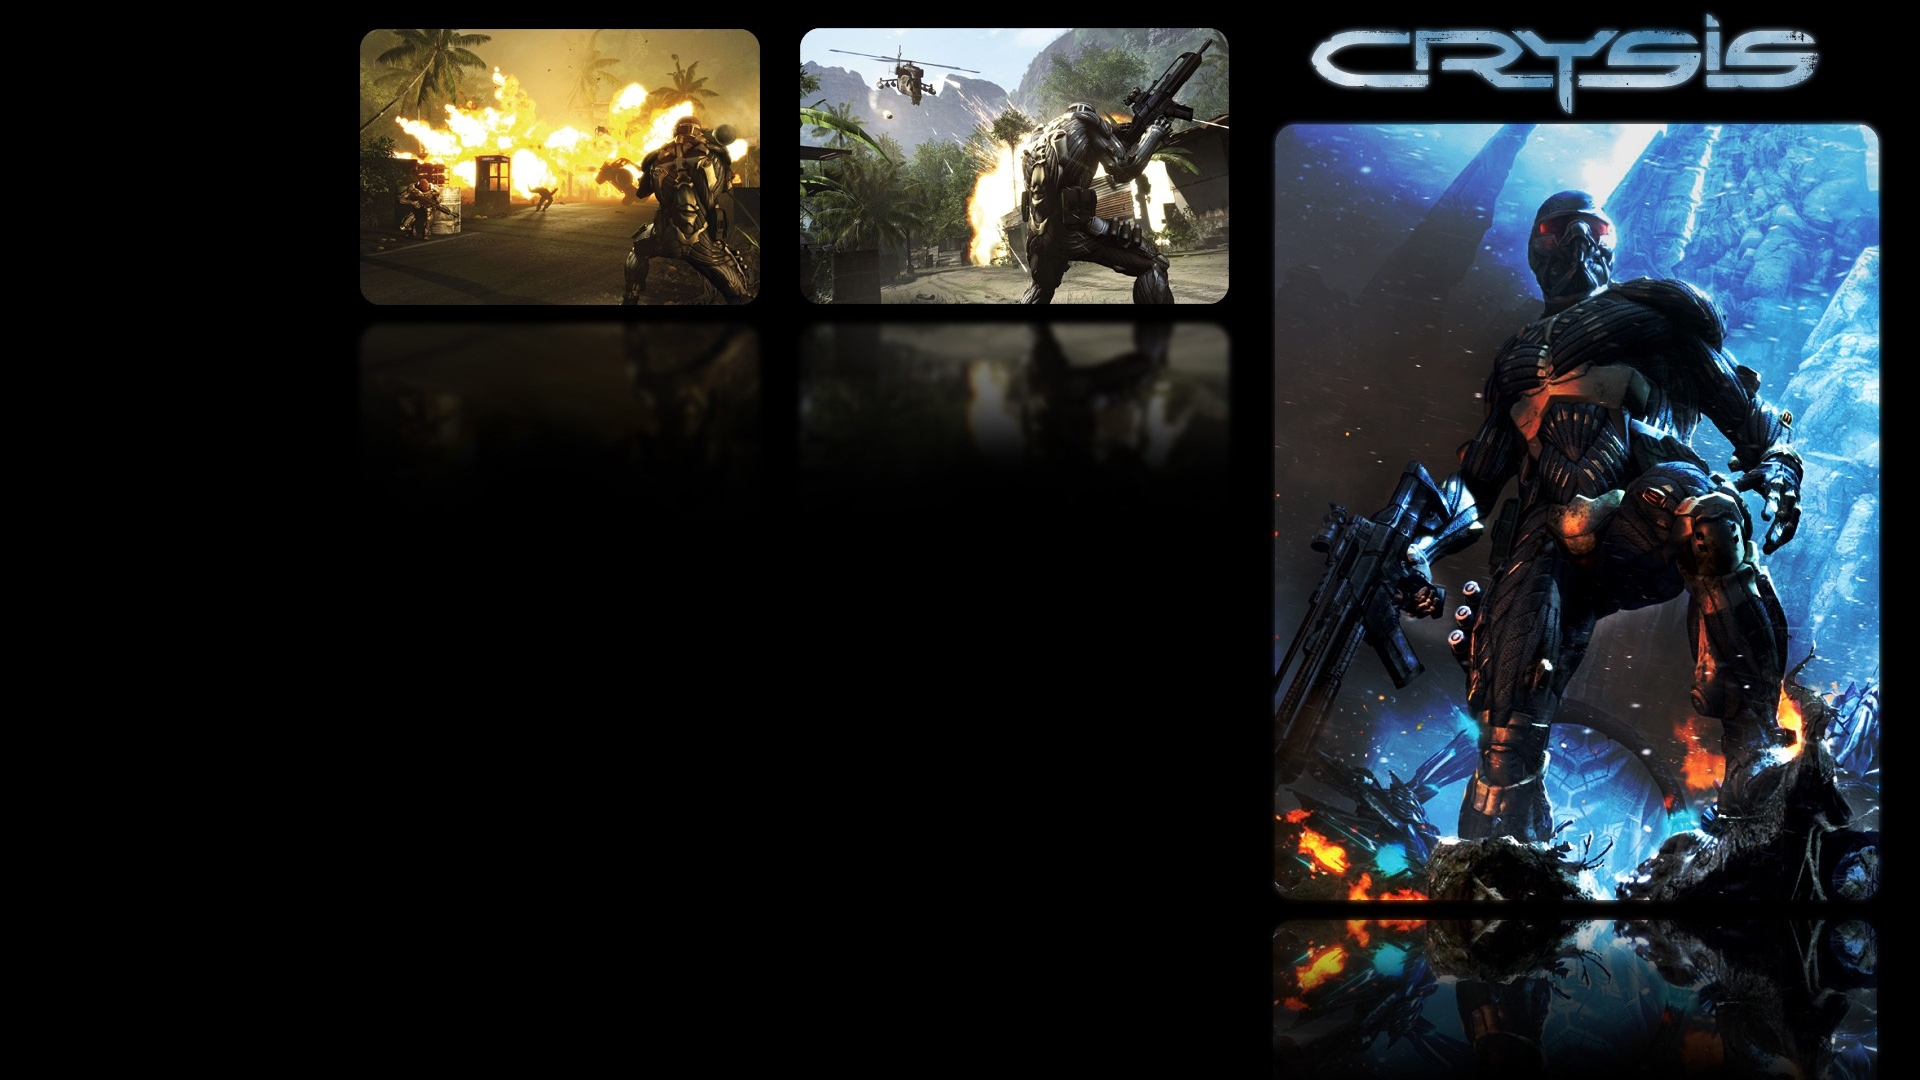 Crysis game wallpaper